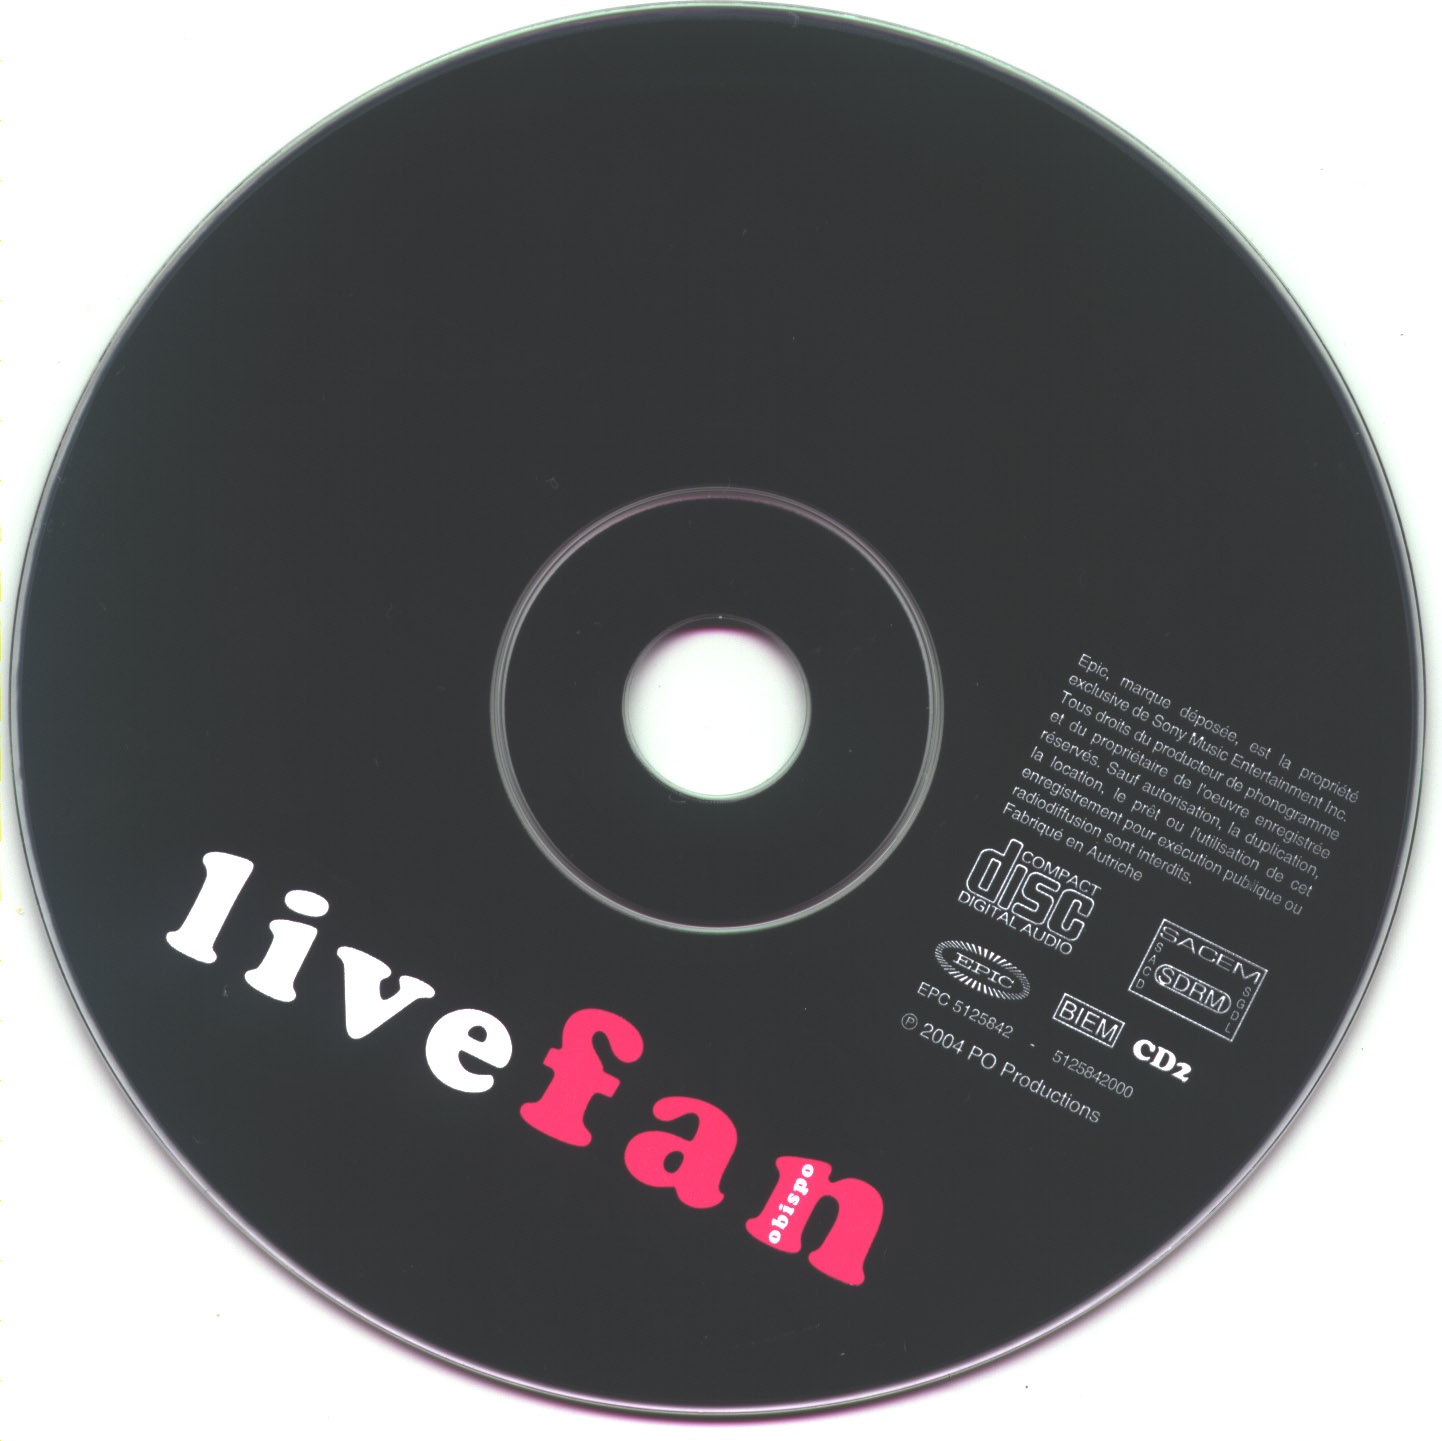 Obispo - fan live 2004